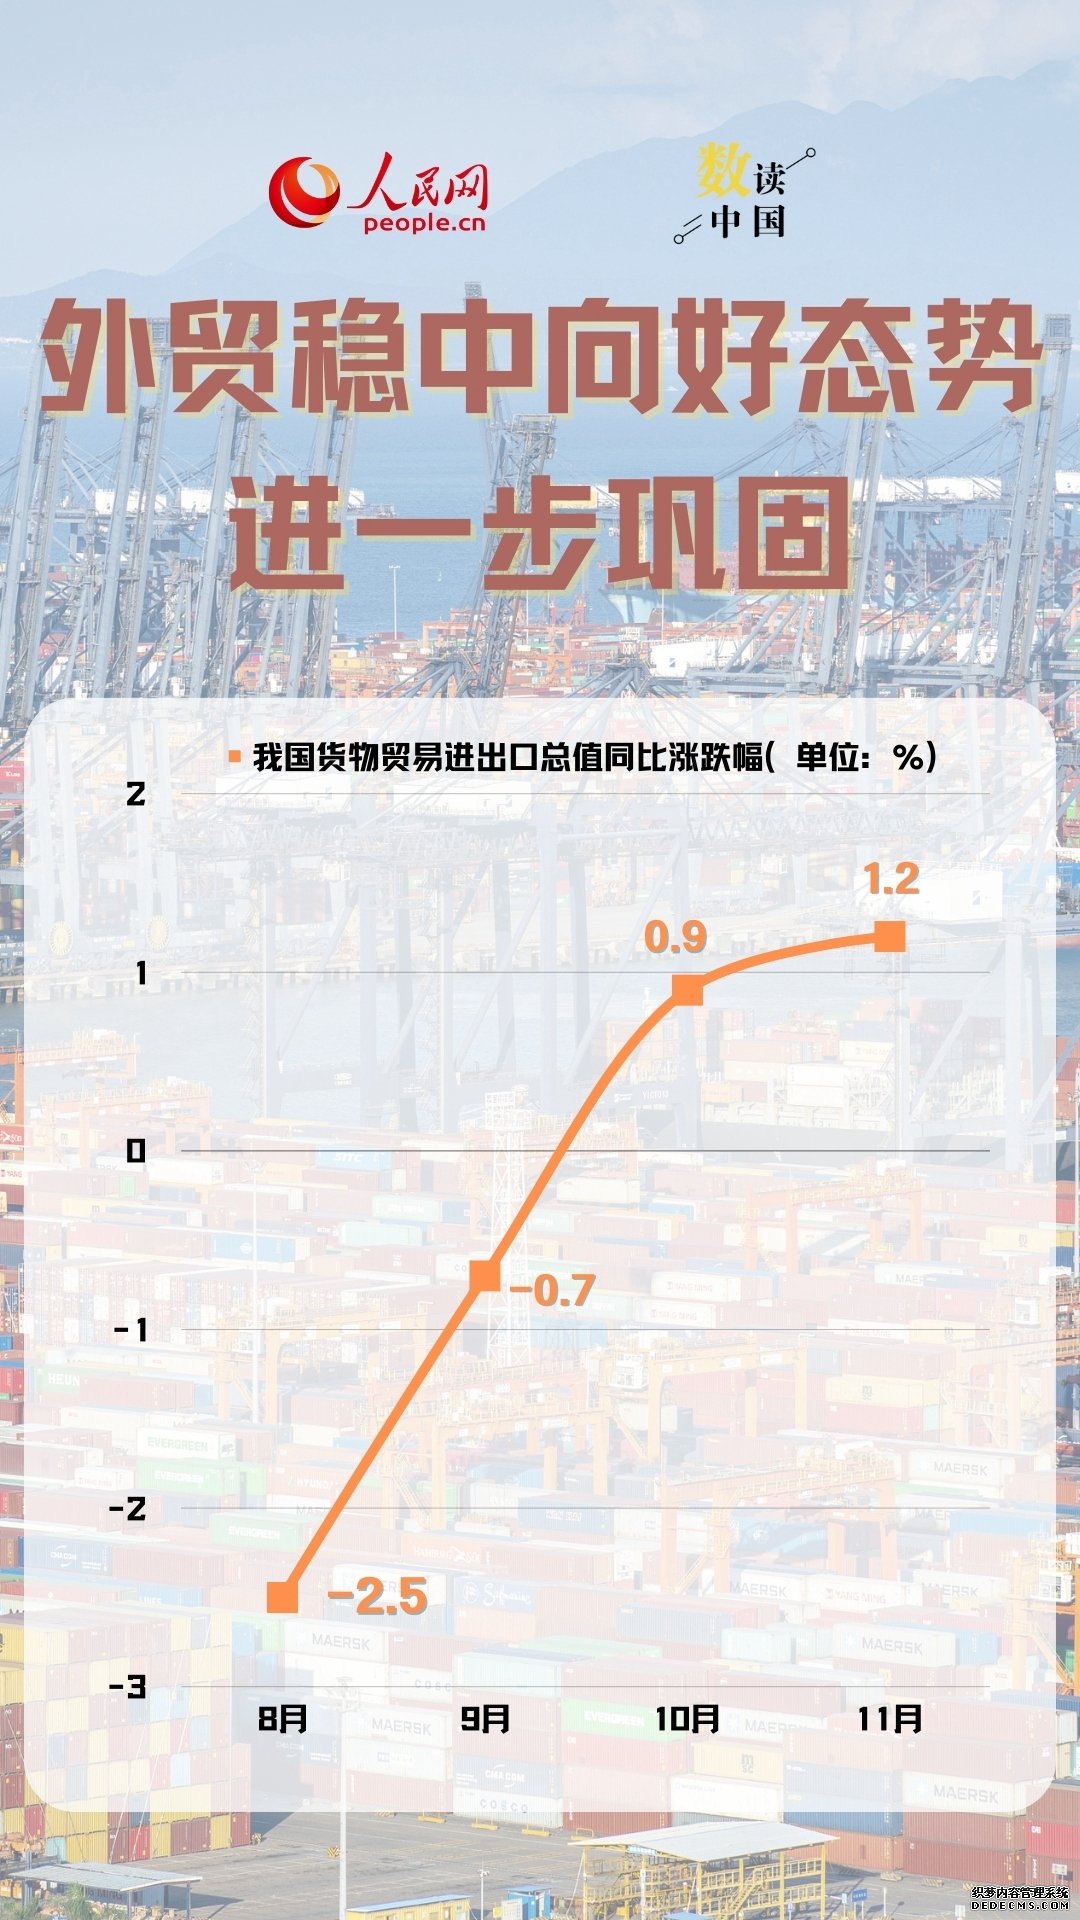 数读中国 | 10组数据一览经济运行回升向好态势